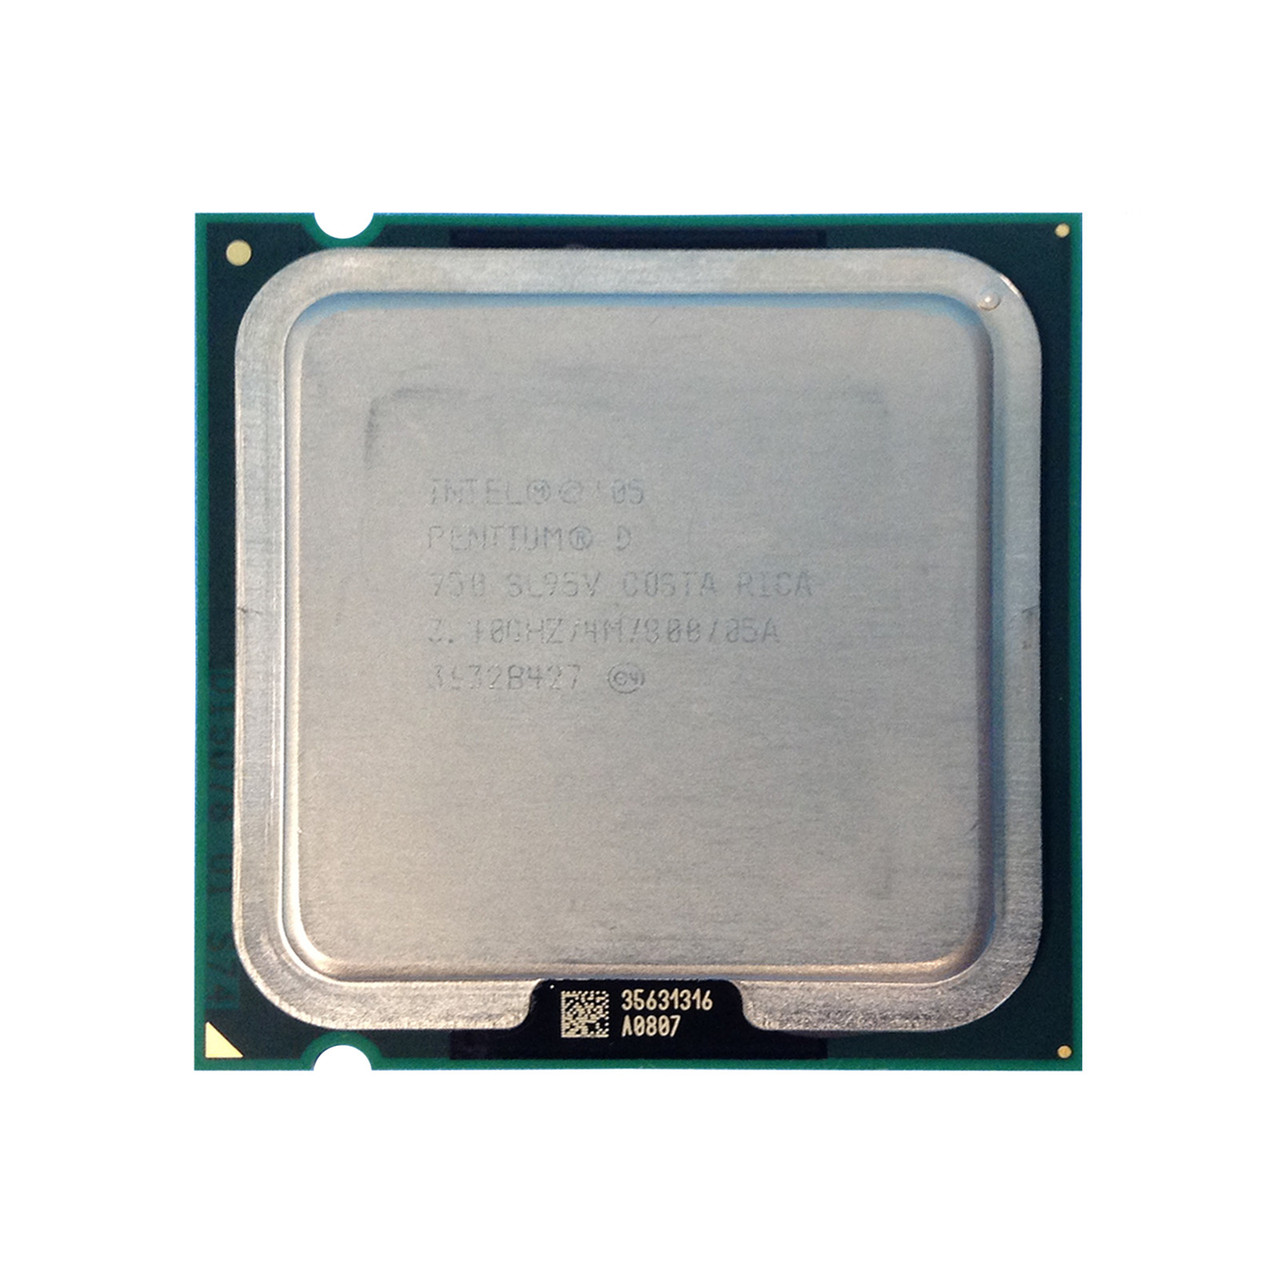 Intel SL95V Pentium D 950 DC 3.4GHz 4MB 800MHz Processor